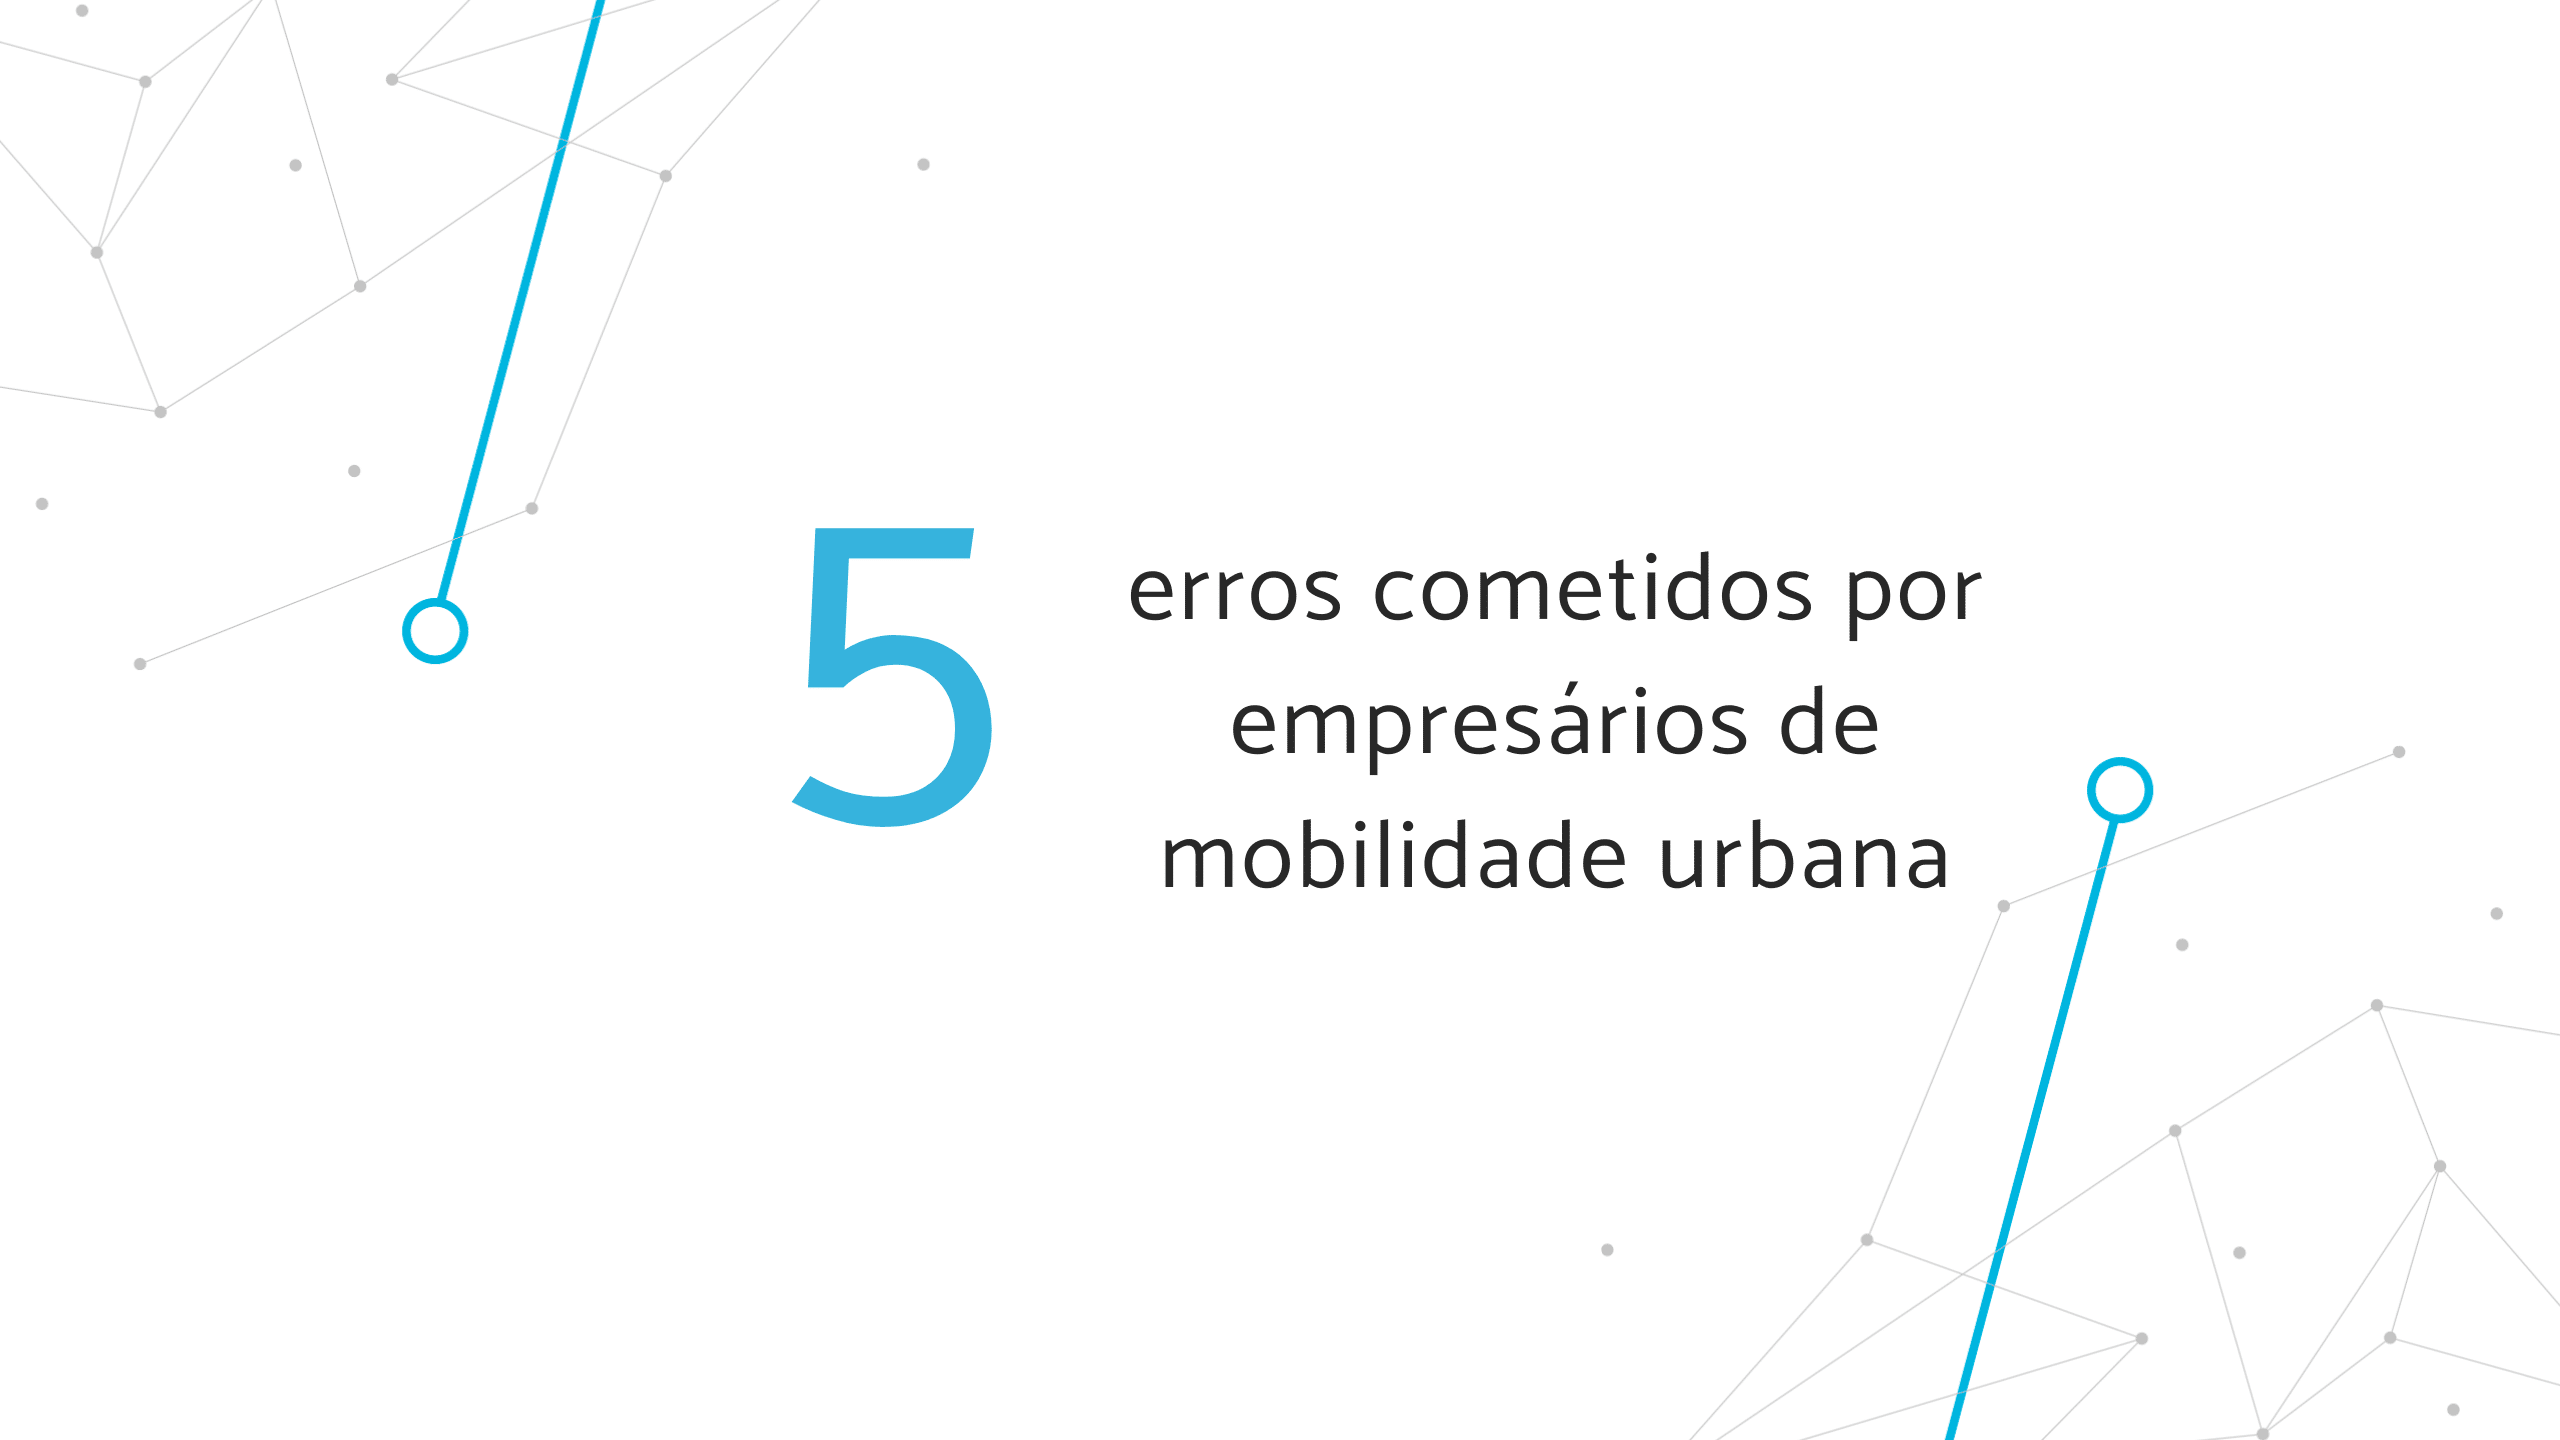 Banner "5 erros cometidos por empresários de mobilidade urbana"